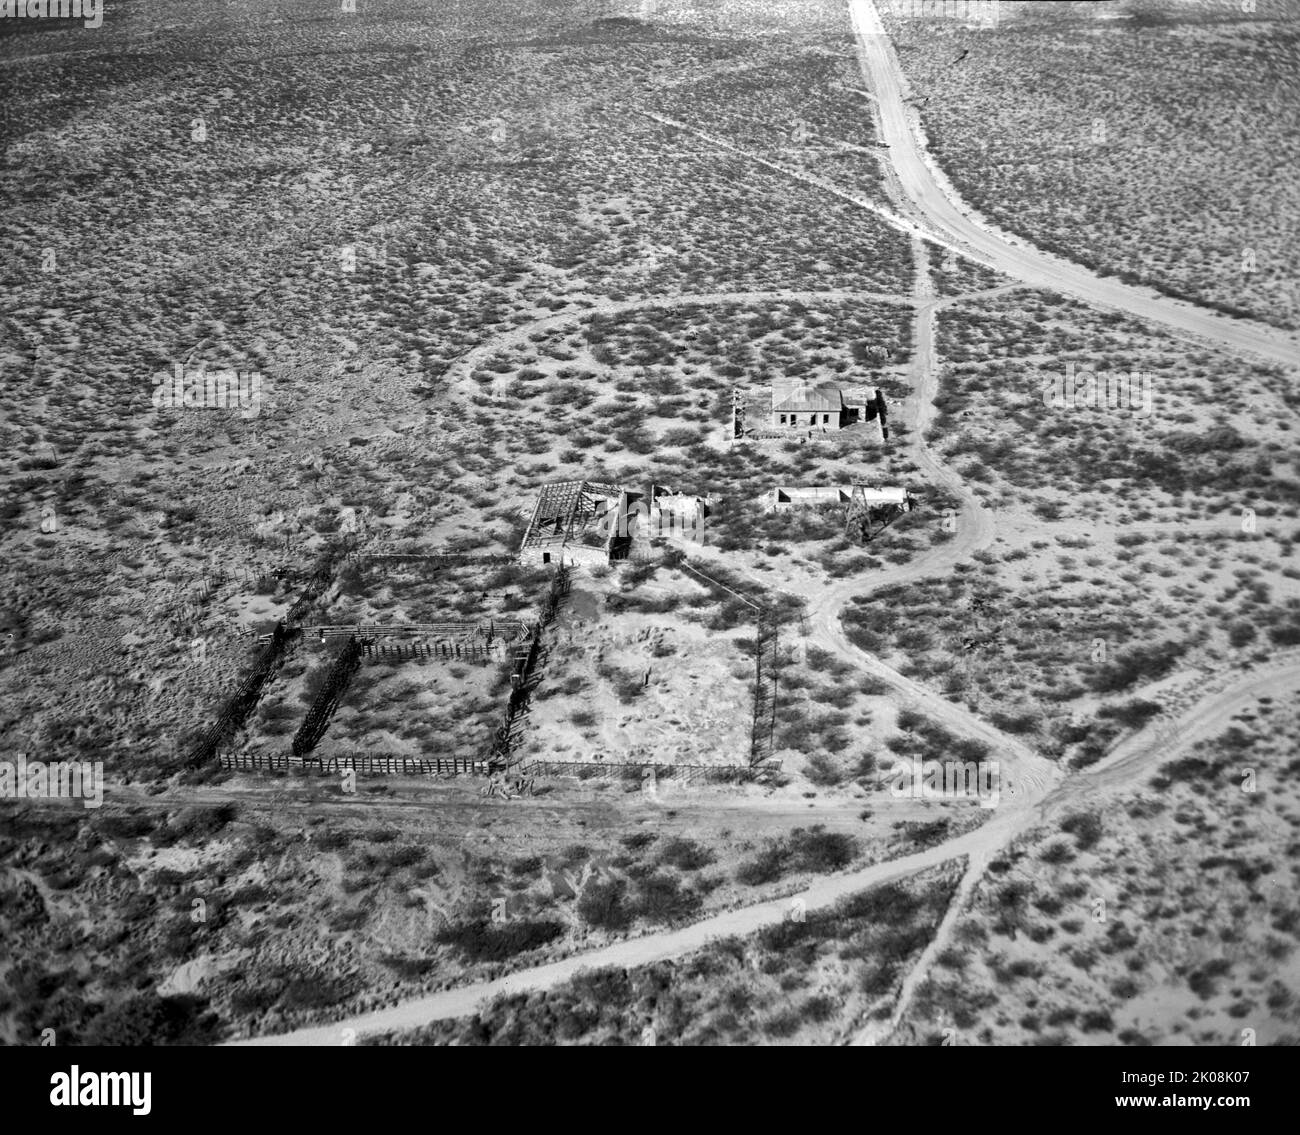 Die erste Atombombe (Codename Trinity) wurde am 16. Juli 1945, sieben Tage nach der Einrichtung des White Sands Proving Ground, am Trinity-Standort in der Nähe der nördlichen Grenze des Bereichs getestet Stockfoto